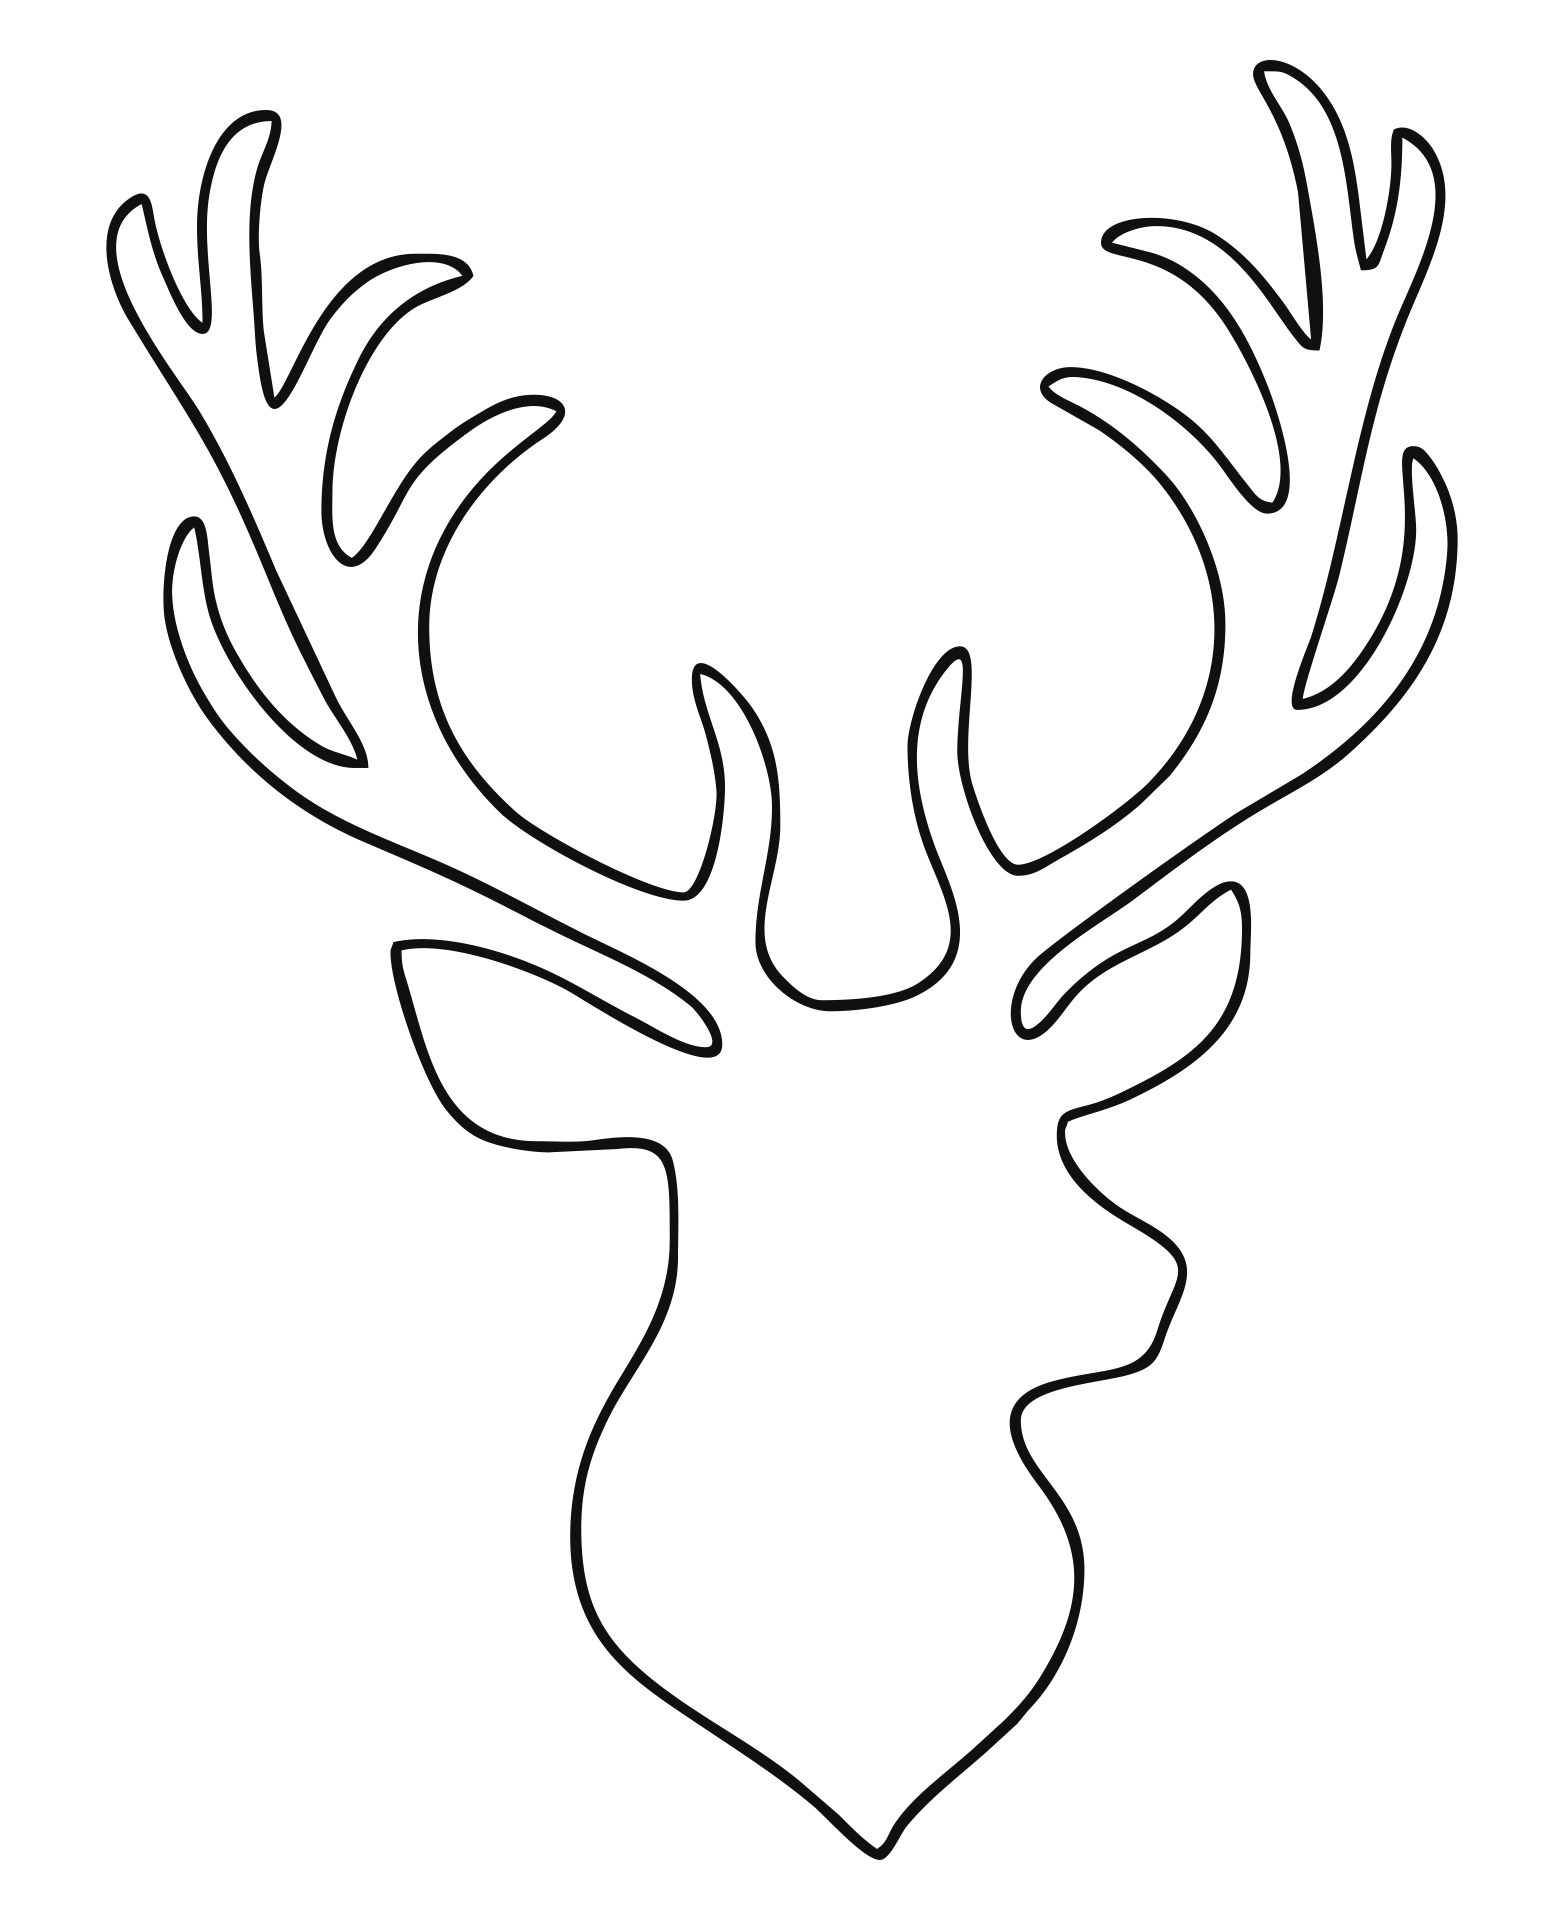 9 Best Images of Printable Reindeer Patterns Free Printable Reindeer